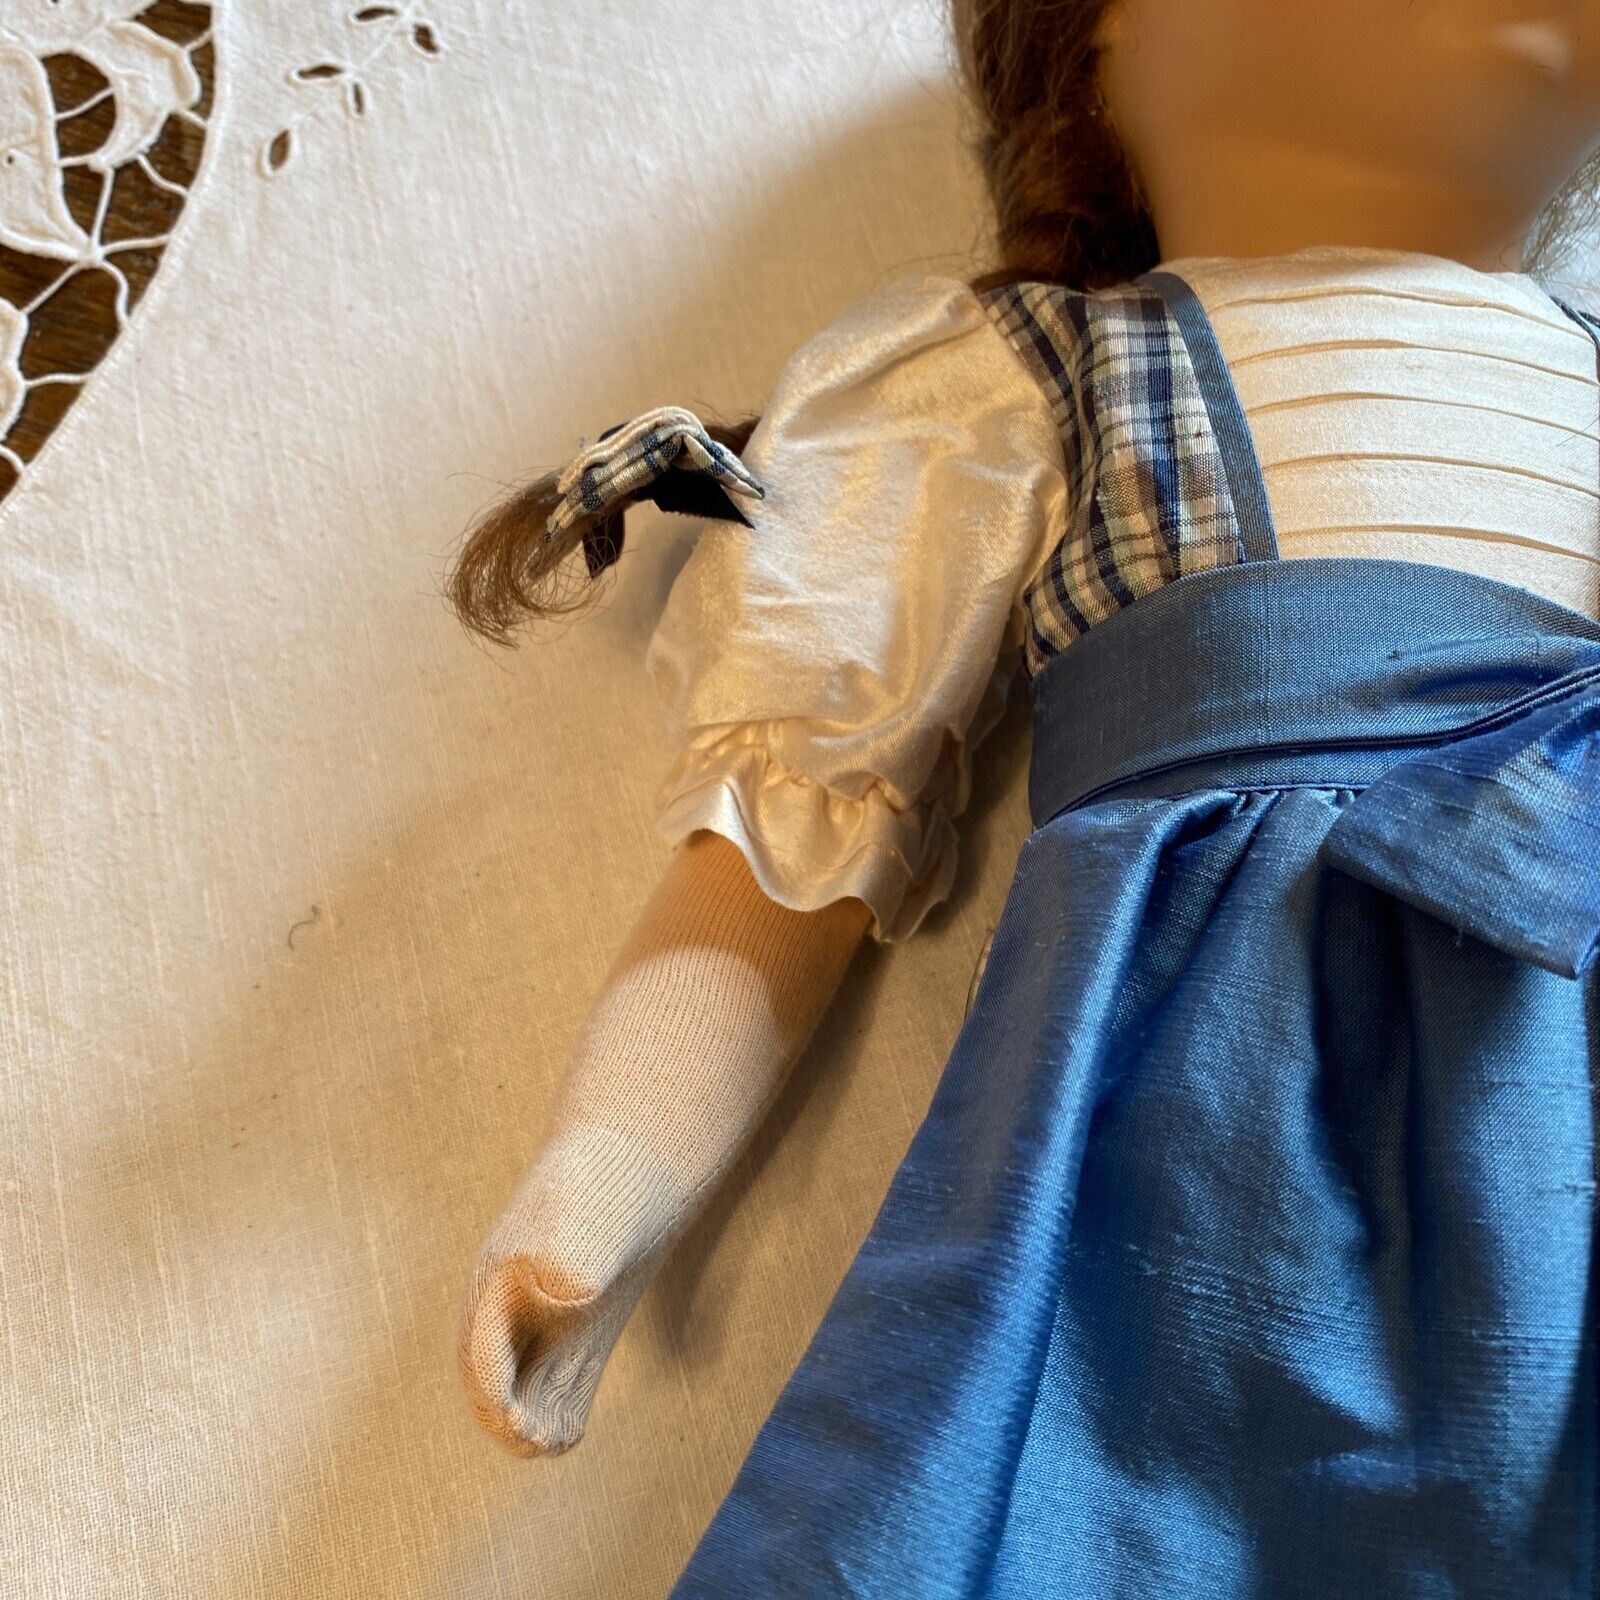 Käthe Kruse Puppe 47 cm von 1986 SuperBärbel